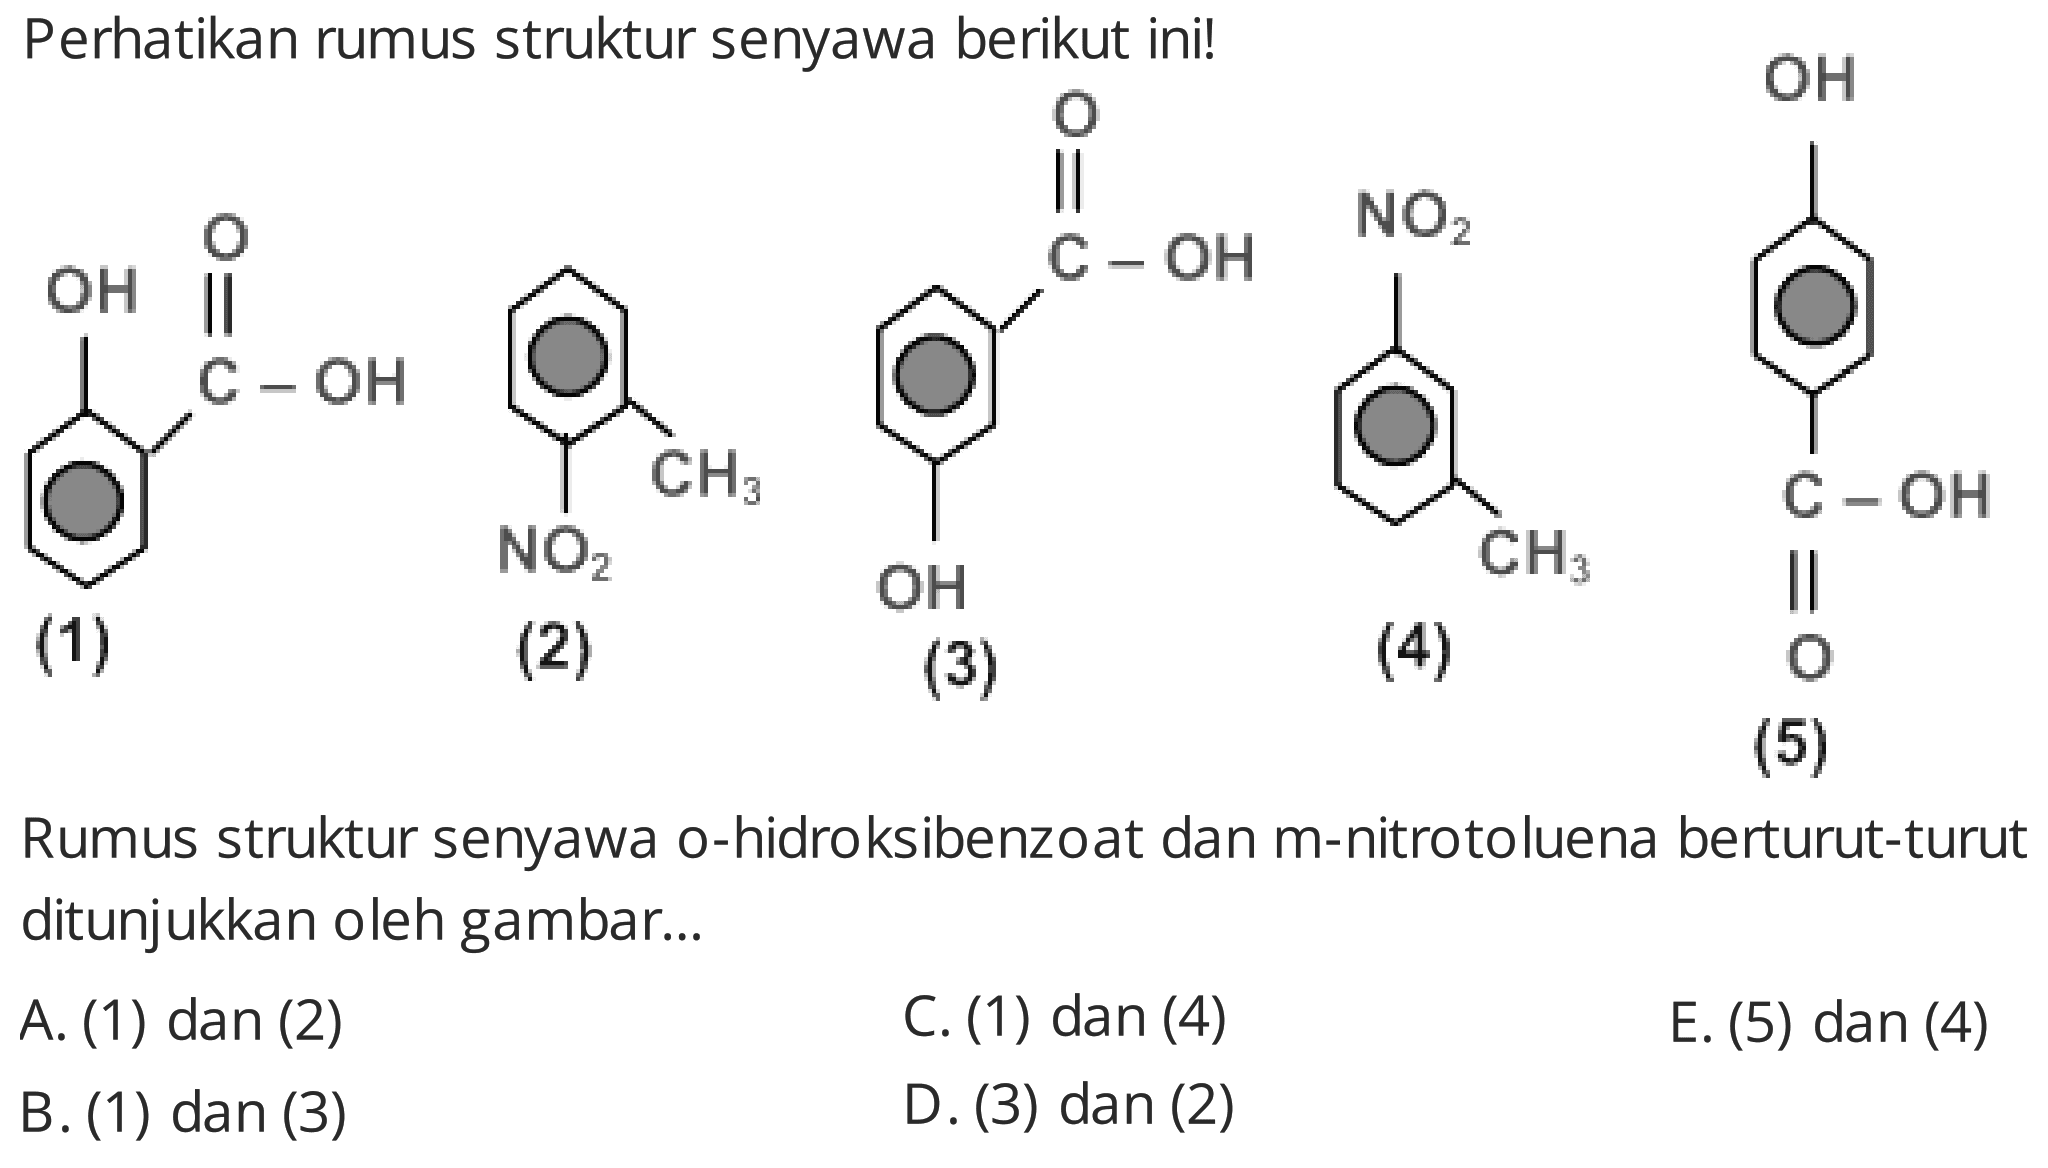 Perhatikan rumus struktur senyawa berikut ini!
CC(=O)c1ccccc1O
(1)
(2)
(3)
(4)
O=C(O)c1ccc(O)cc1
(5)
Rumus struktur senyawa o-hidroksibenzoat dan m-nitrotoluena berturut-turut ditunjukkan oleh gambar...
A. (1) dan (2)
C. (1) dan (4)
E. (5) dan (4)
B. (1) dan (3)
D. (3) dan (2)